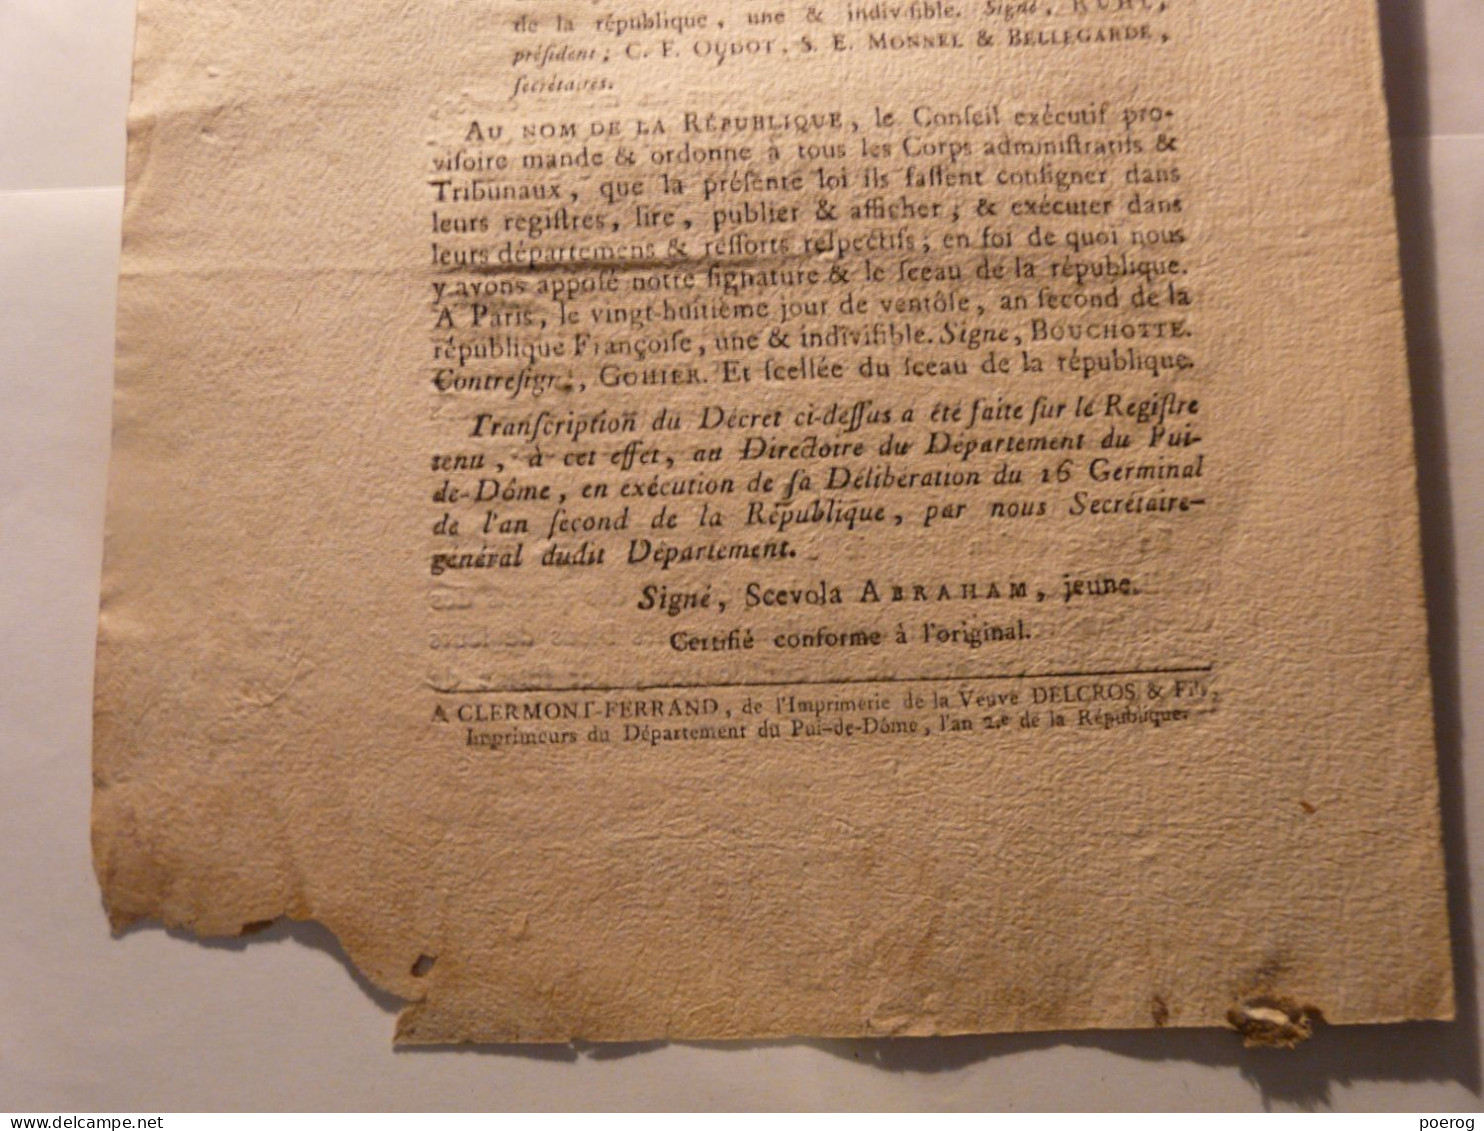 DECRET CONVENTION NATIONALE Du 12 MARS 1794 - ECCLESIASTIQUES FRERES LAIS CONVERS DEPORTES RELIGIEUX VENDEE CHOUANS - Décrets & Lois